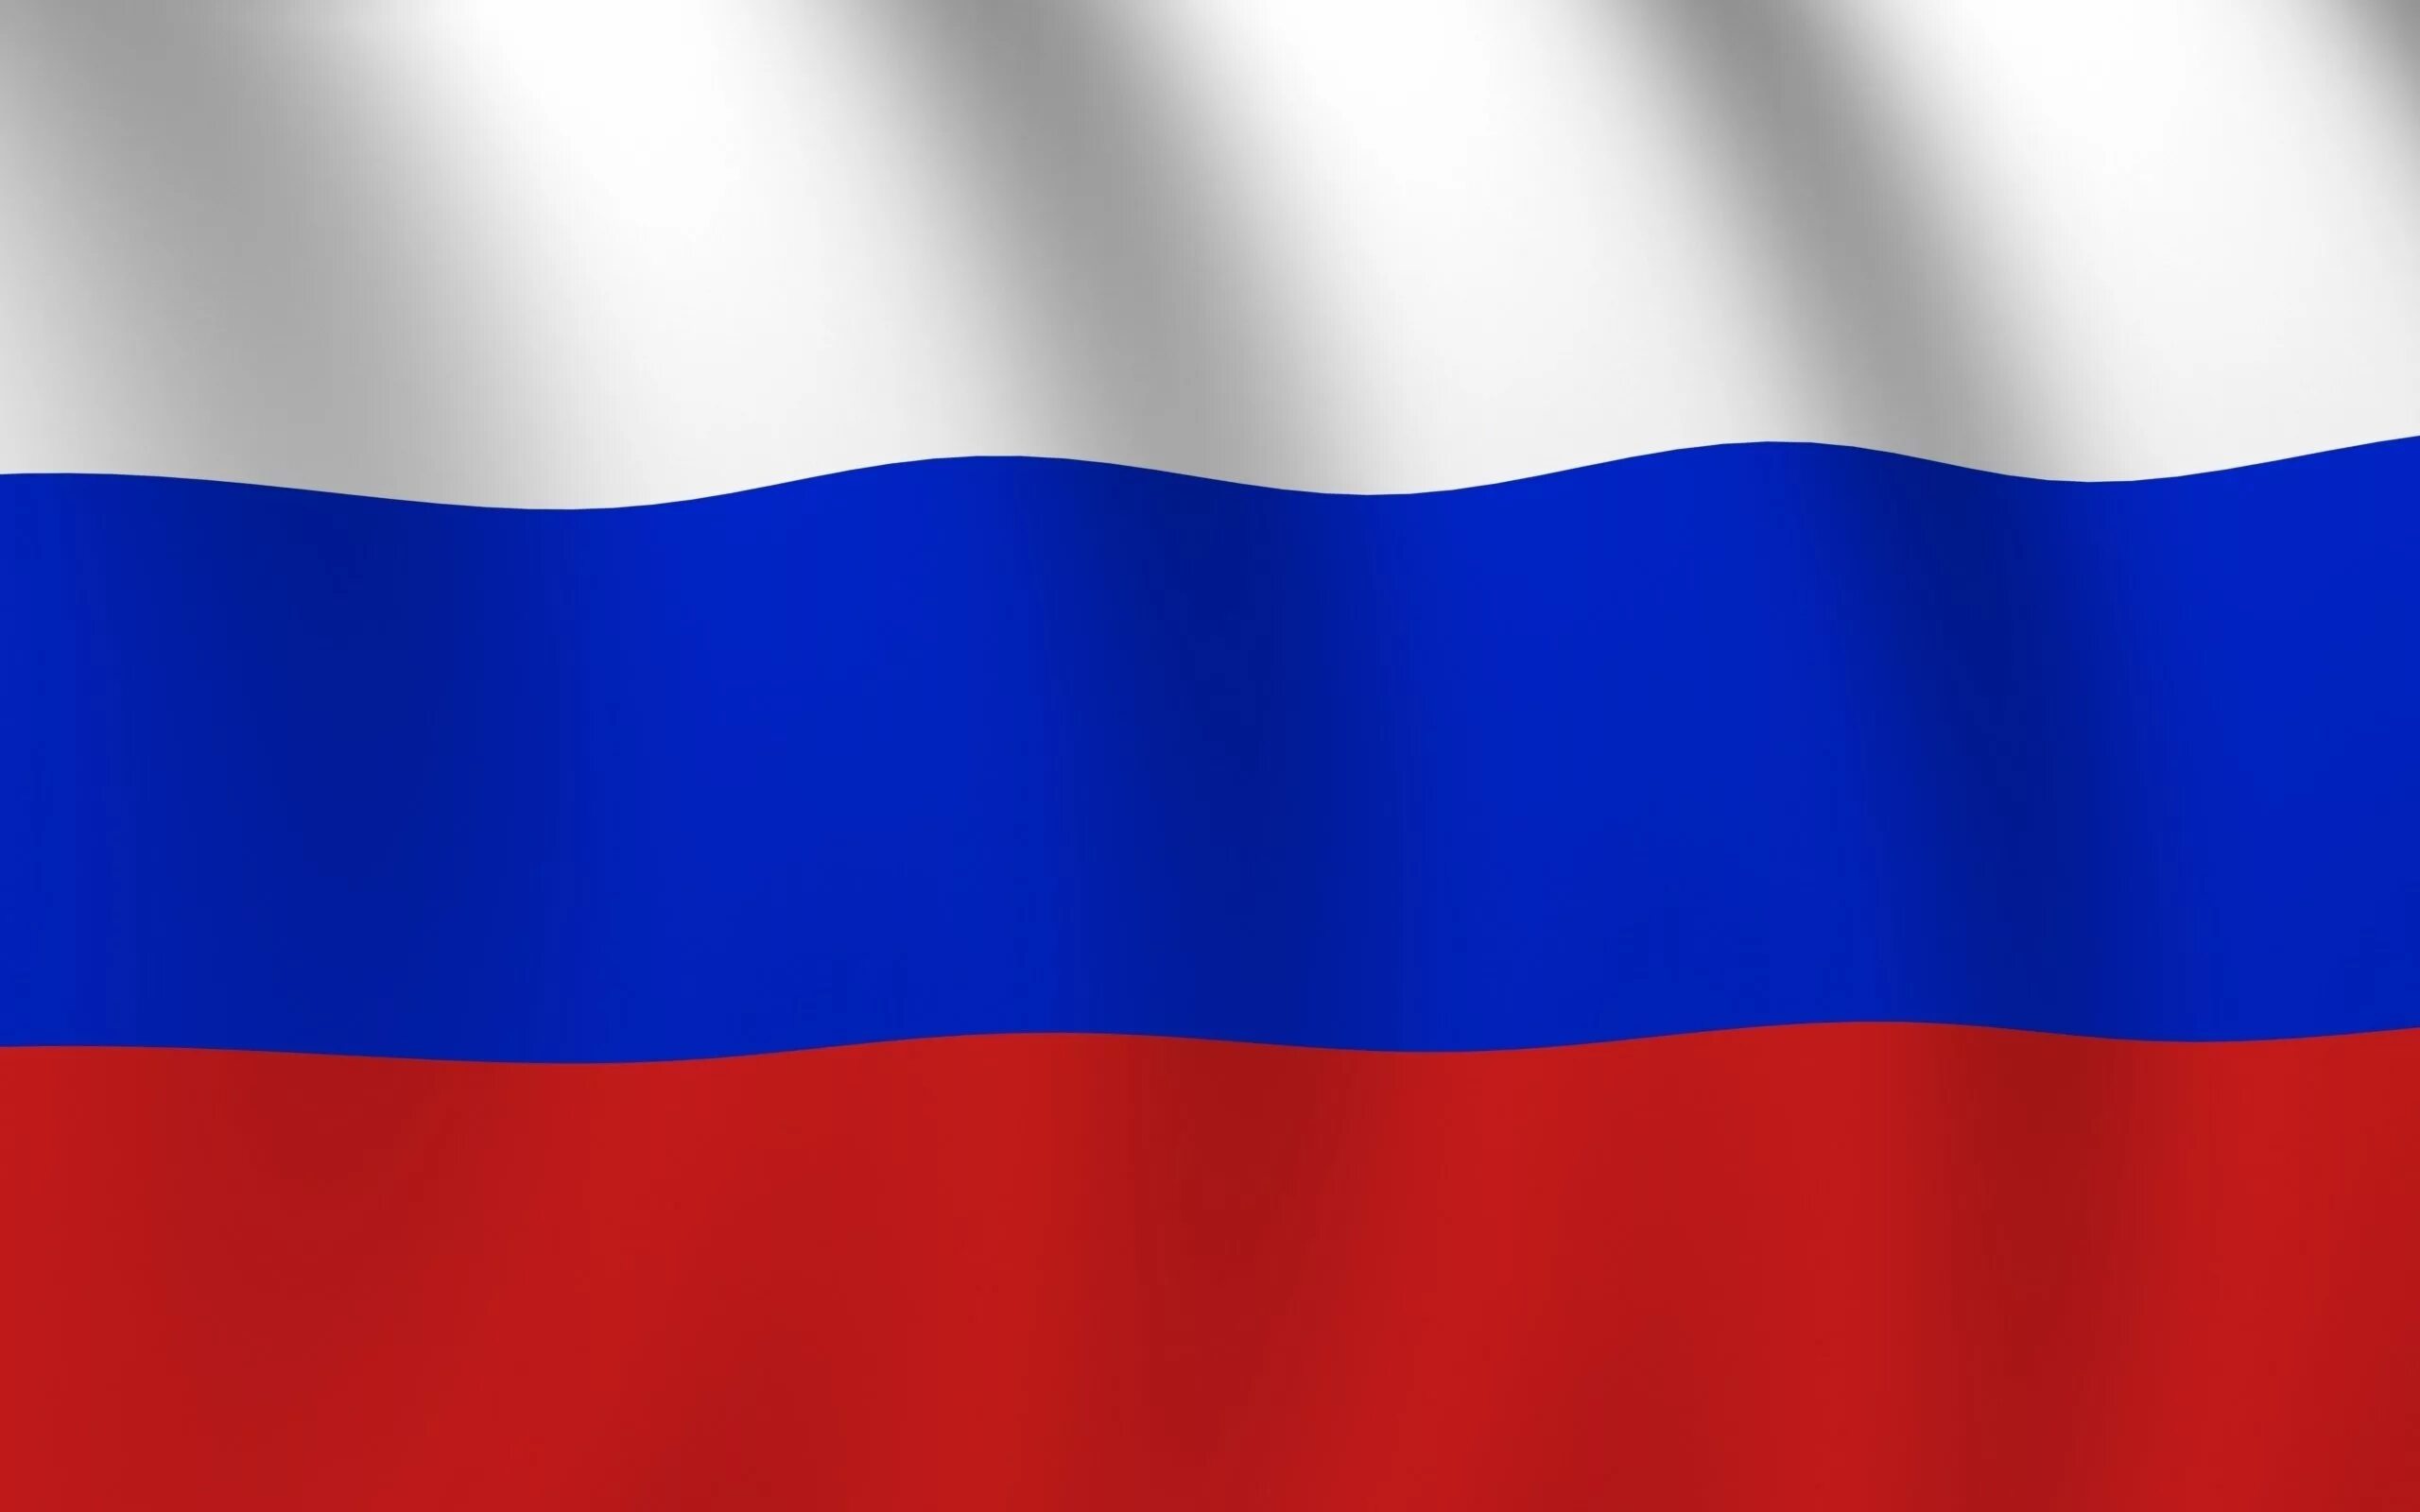 Как выглядит флаг картинка. Ф̆̈л̆̈ӑ̈г̆̈ р̆̈о̆̈с̆̈с̆̈й̈й̈. Флаг России. Флаг Триколор России. Флига России.